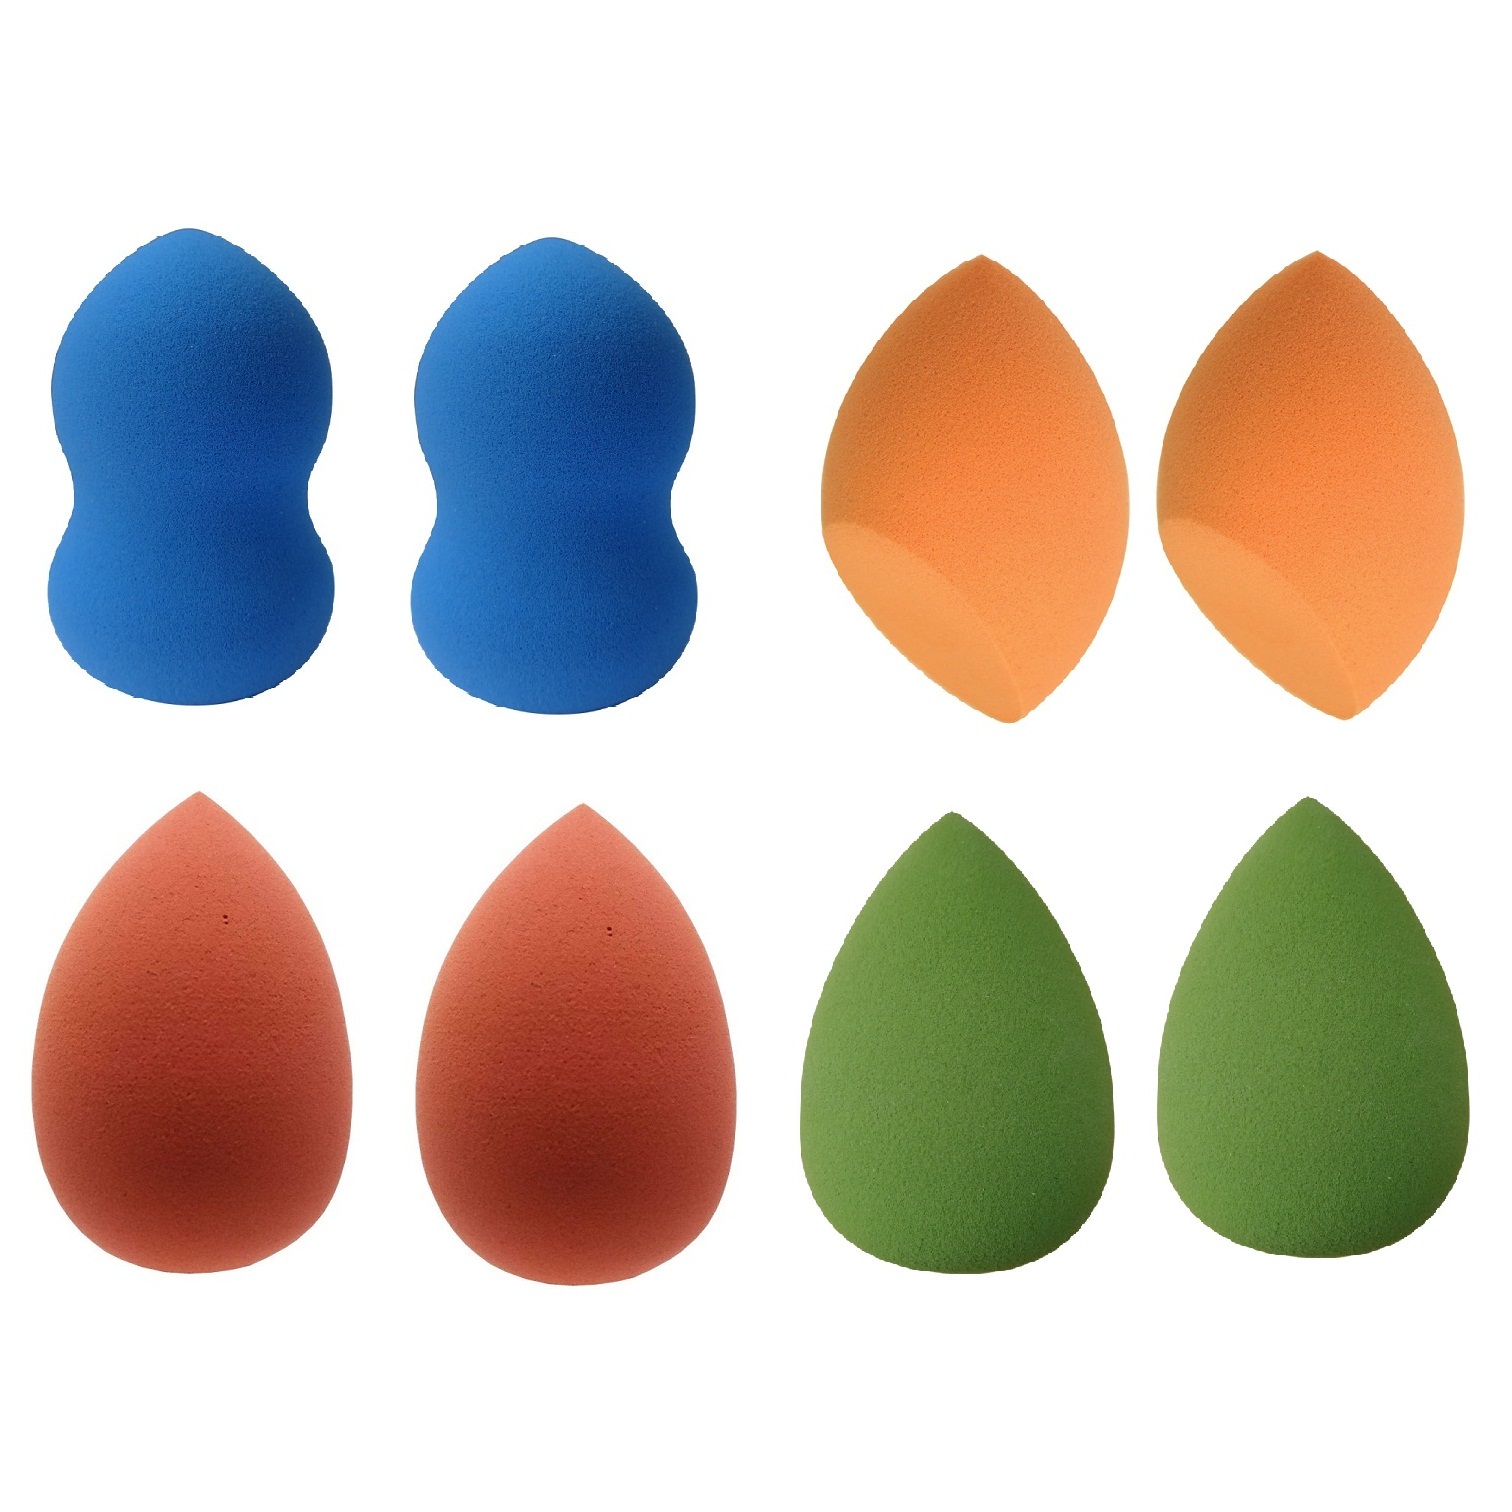 پد آرایشی مدل تخم مرغی مجموعه 8 عددی 